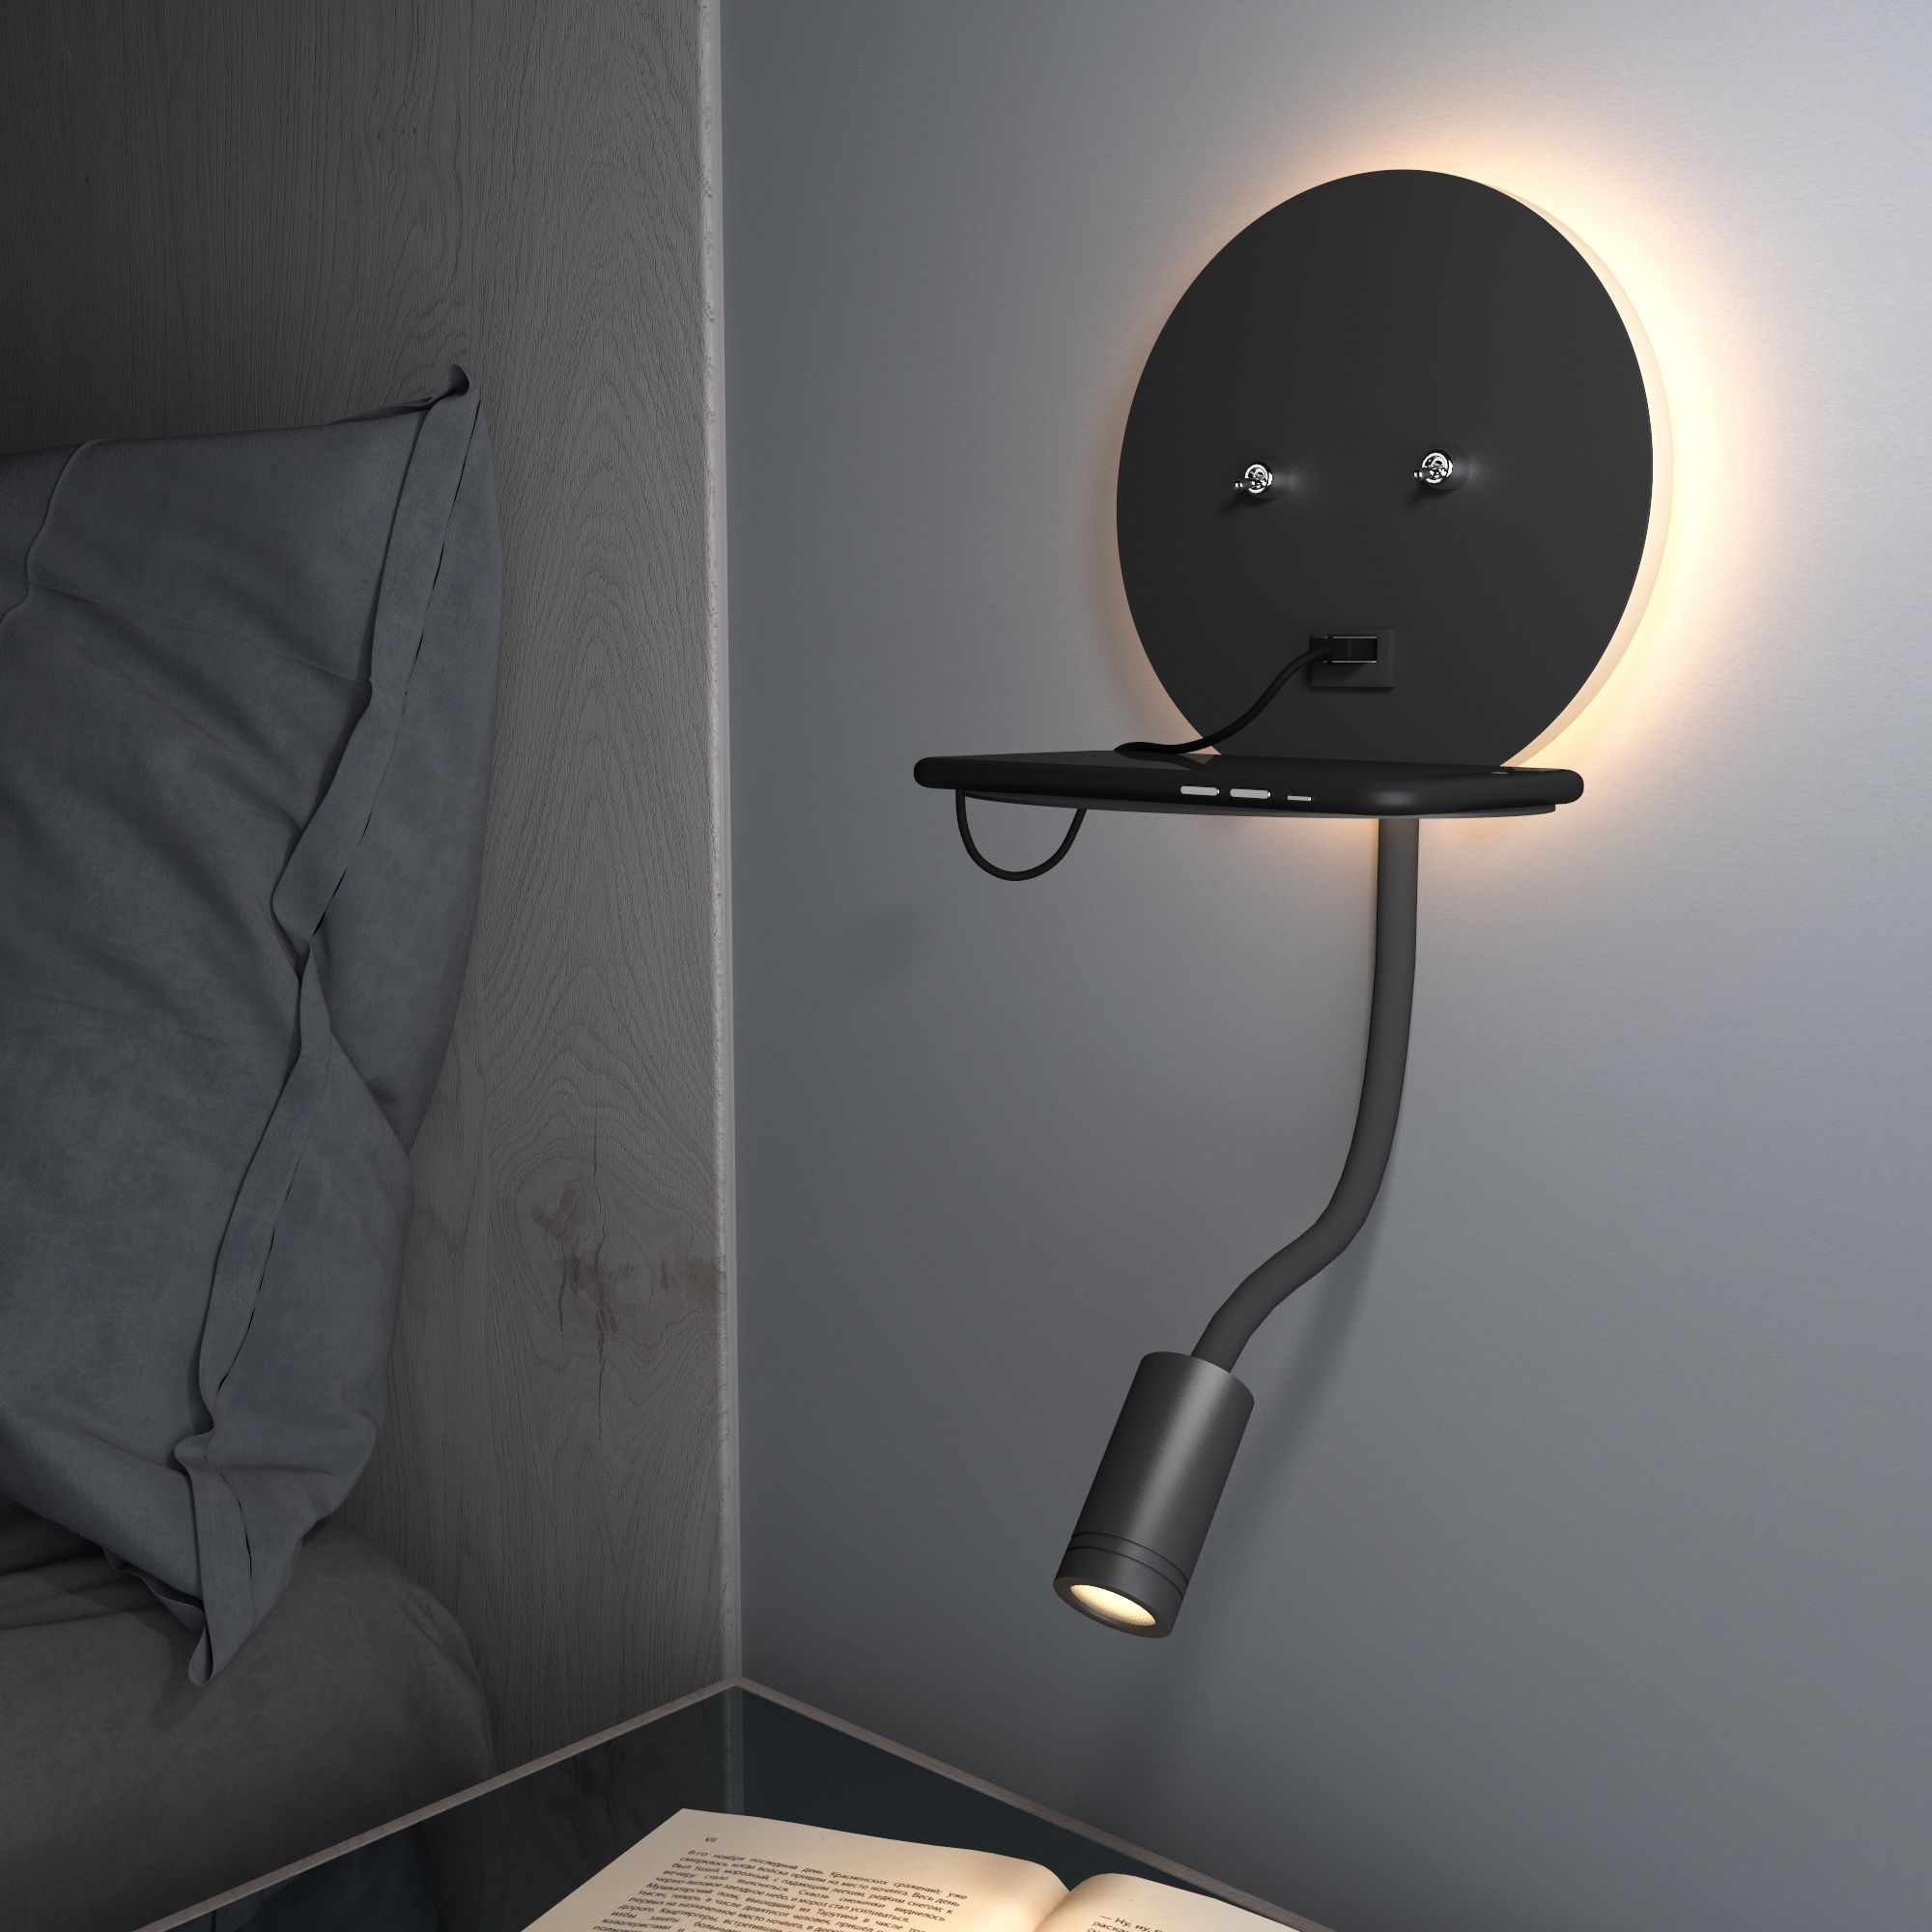 Настенный светодиодный светильник Lungo LED MRL LED 1017 чёрный